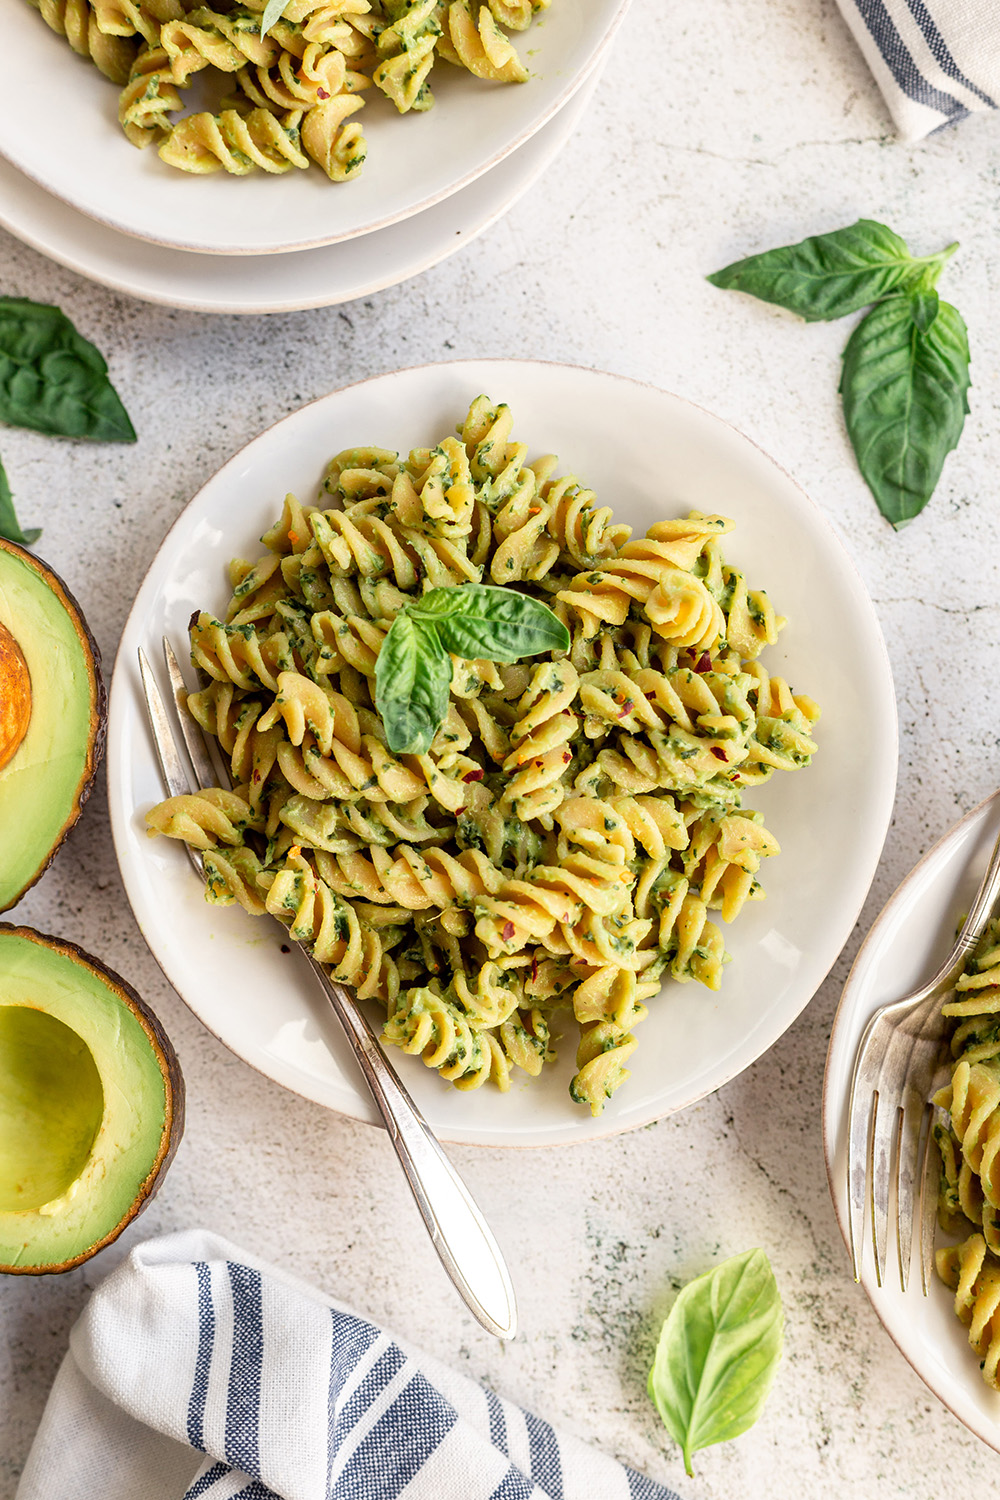 15-Minute Avocado Pasta Recipe made with Veggiecraft Farms Cauliflower Rotini pasta